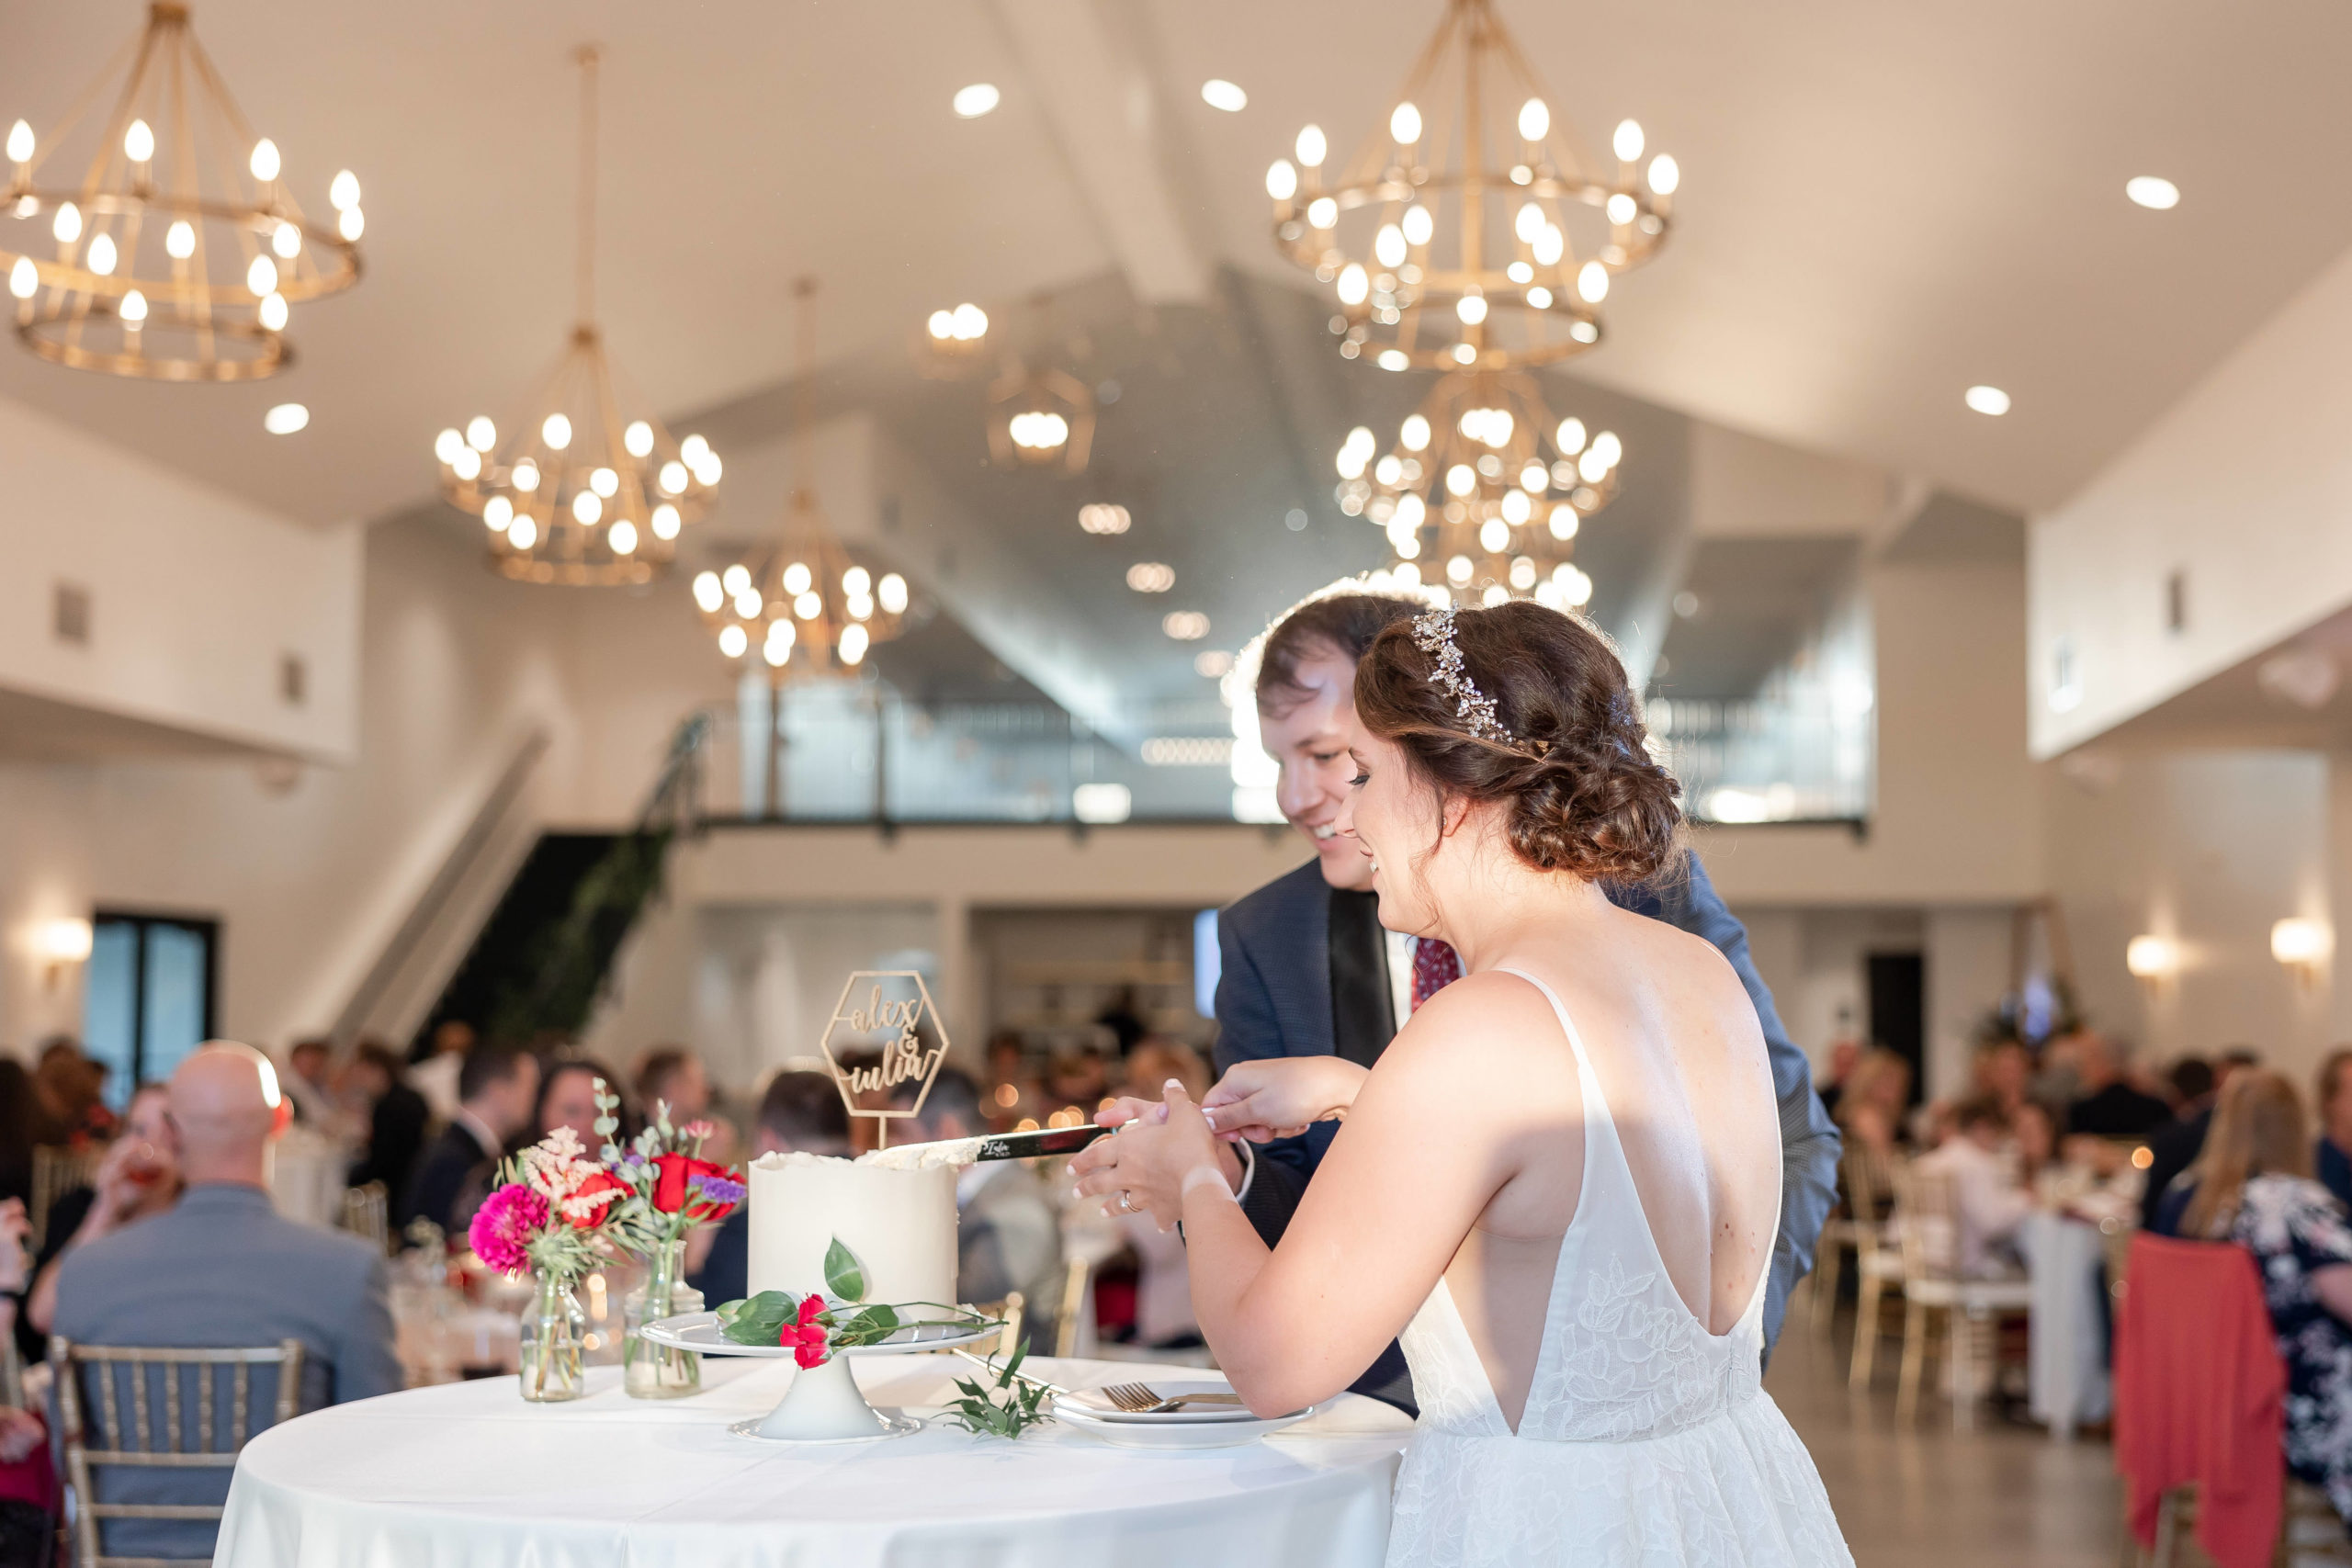 eloise-wedding-reception-cake-cutting